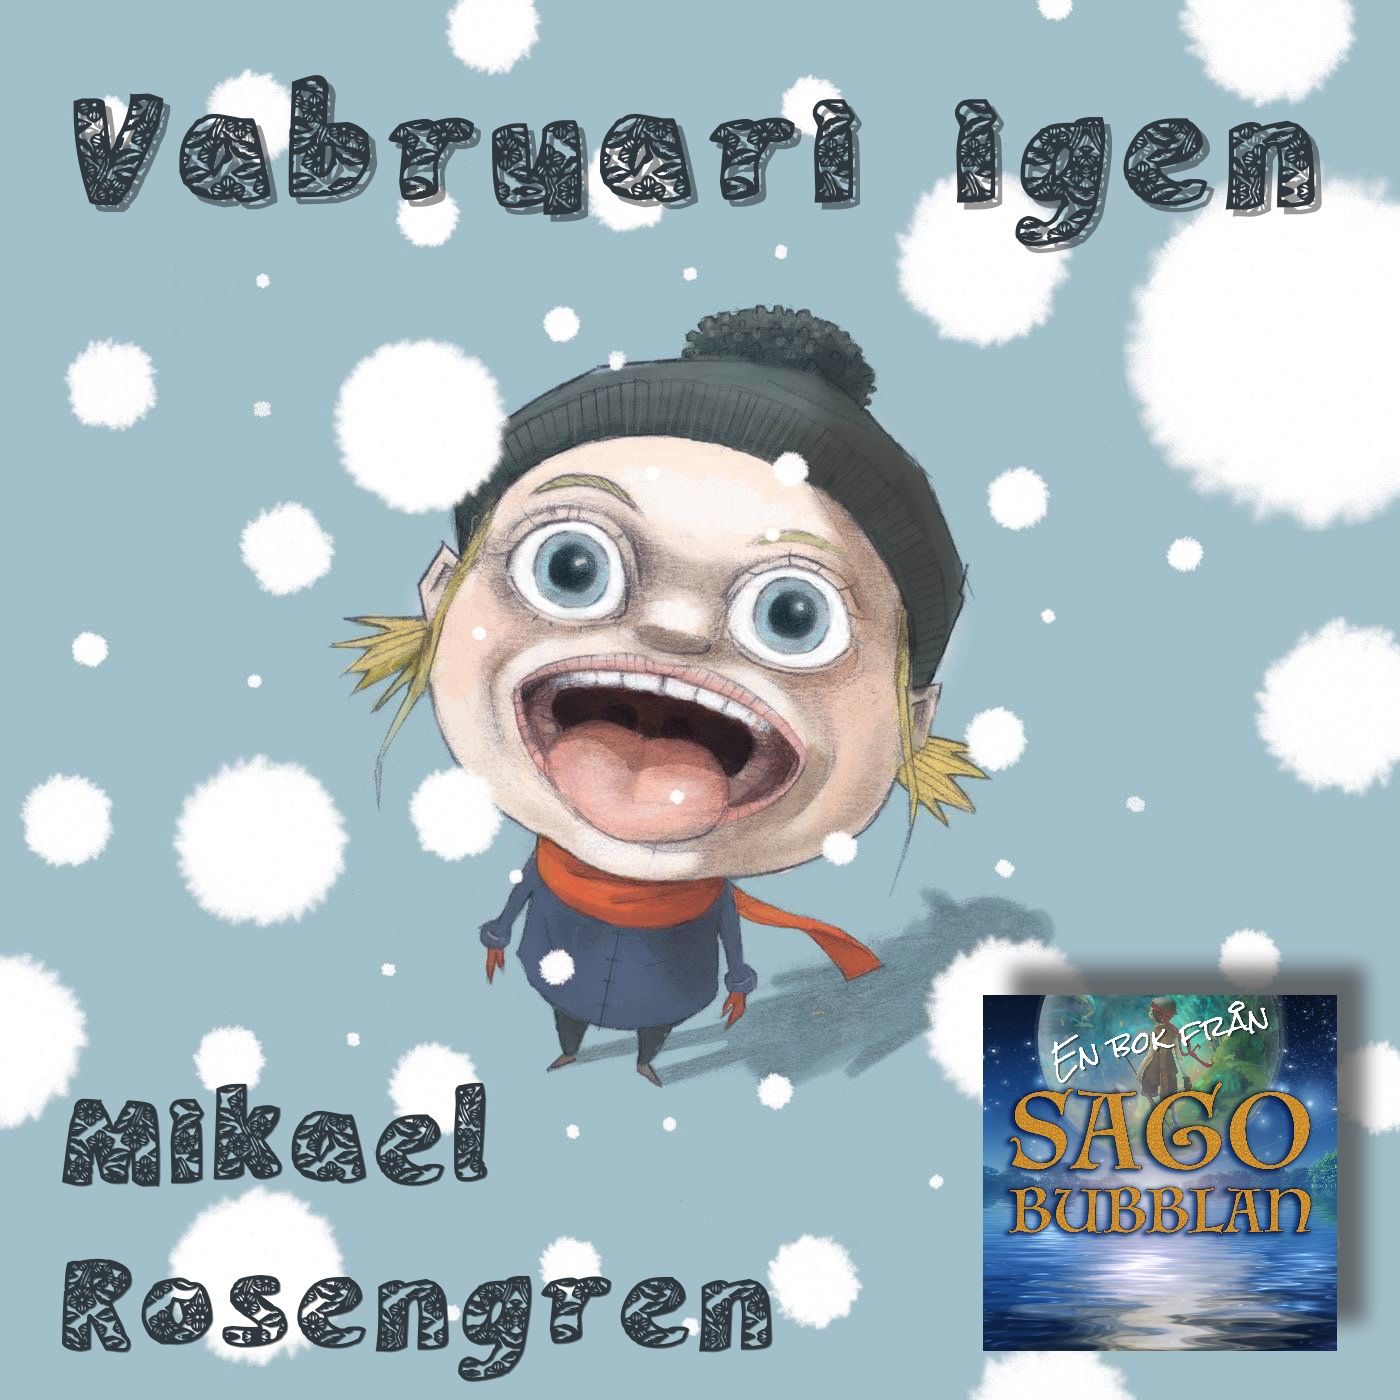 Vabruari igen, audiobook by Mikael Rosengren